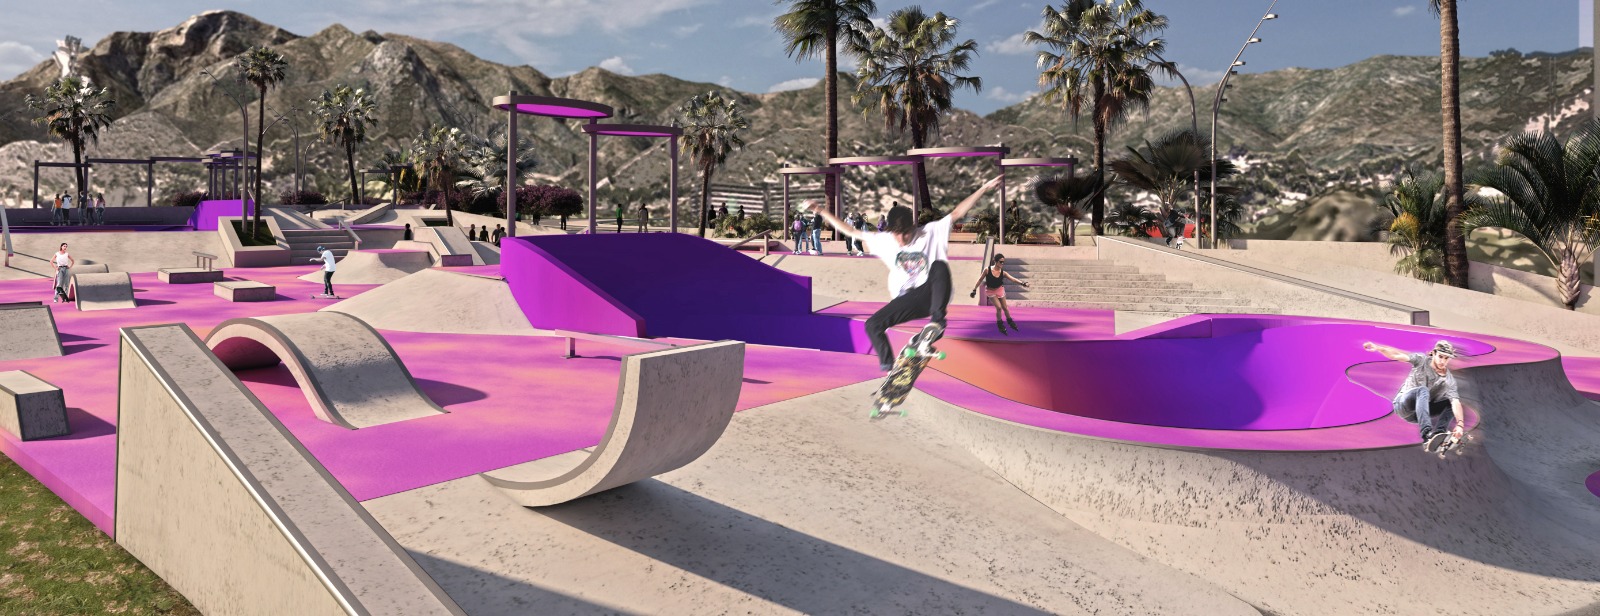 El Ayuntamiento licita un nuevo Skate Park en la zona de Trapiche Norte, con más de 5.000 metros cuadrados de superficie